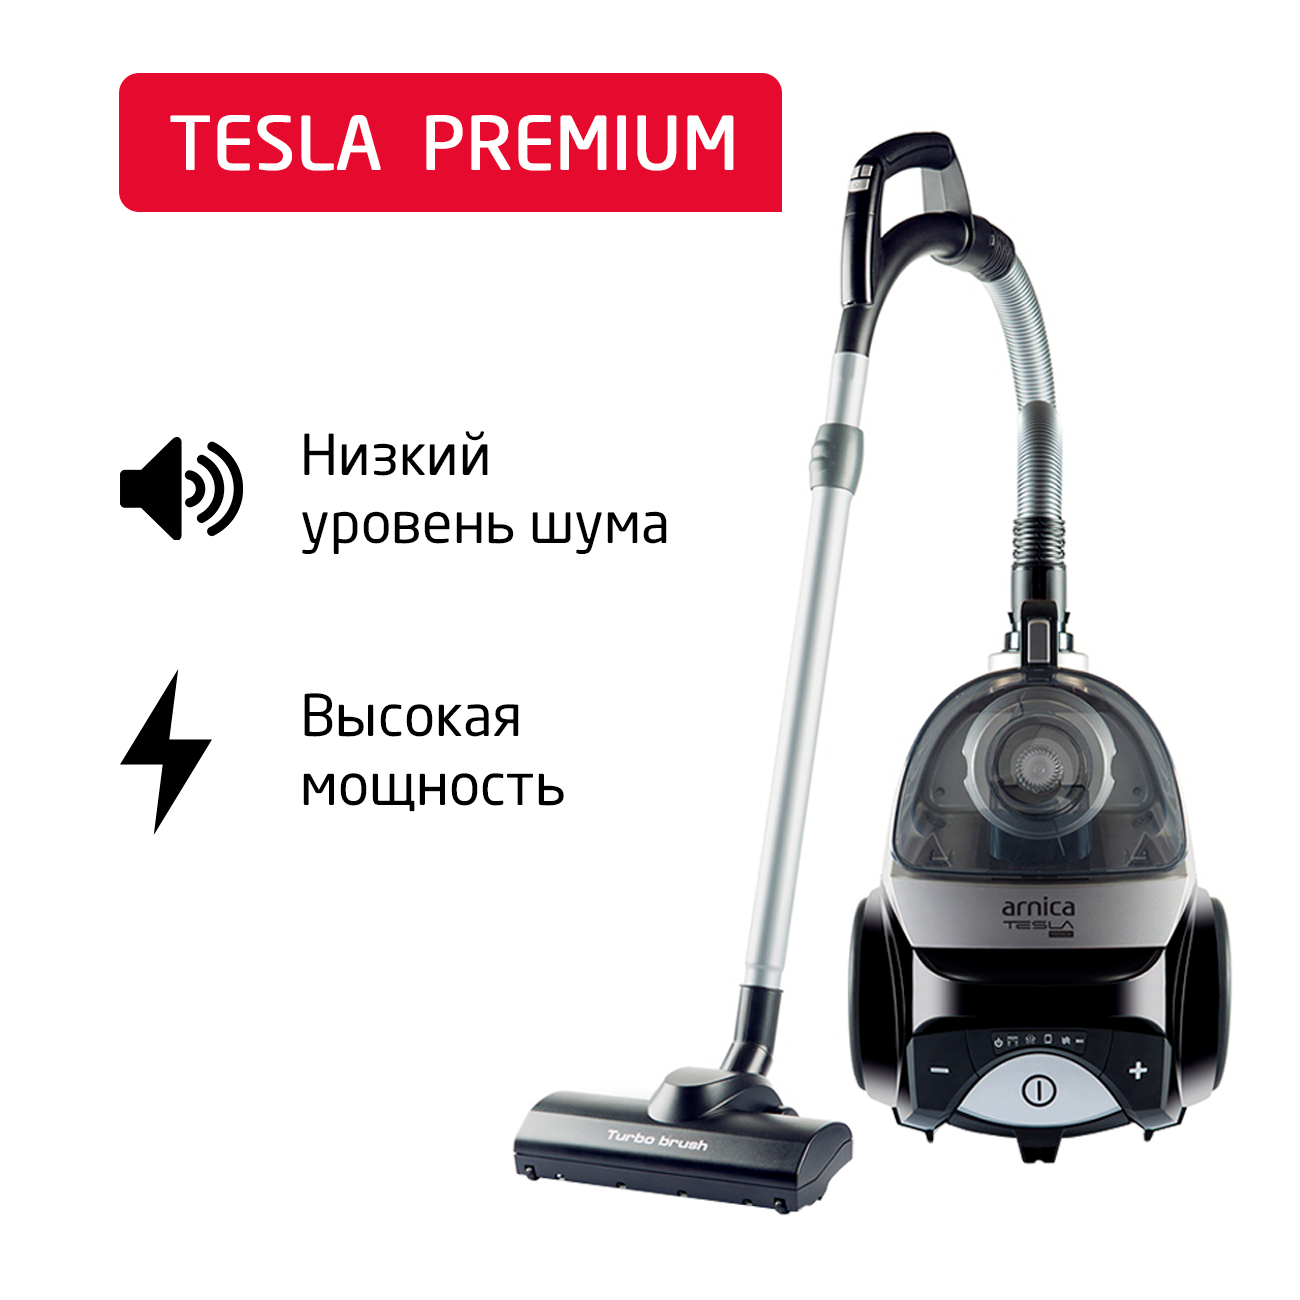 Пылесос ARNICA Tesla Premium серебристый, черный пылесос arnica et14000